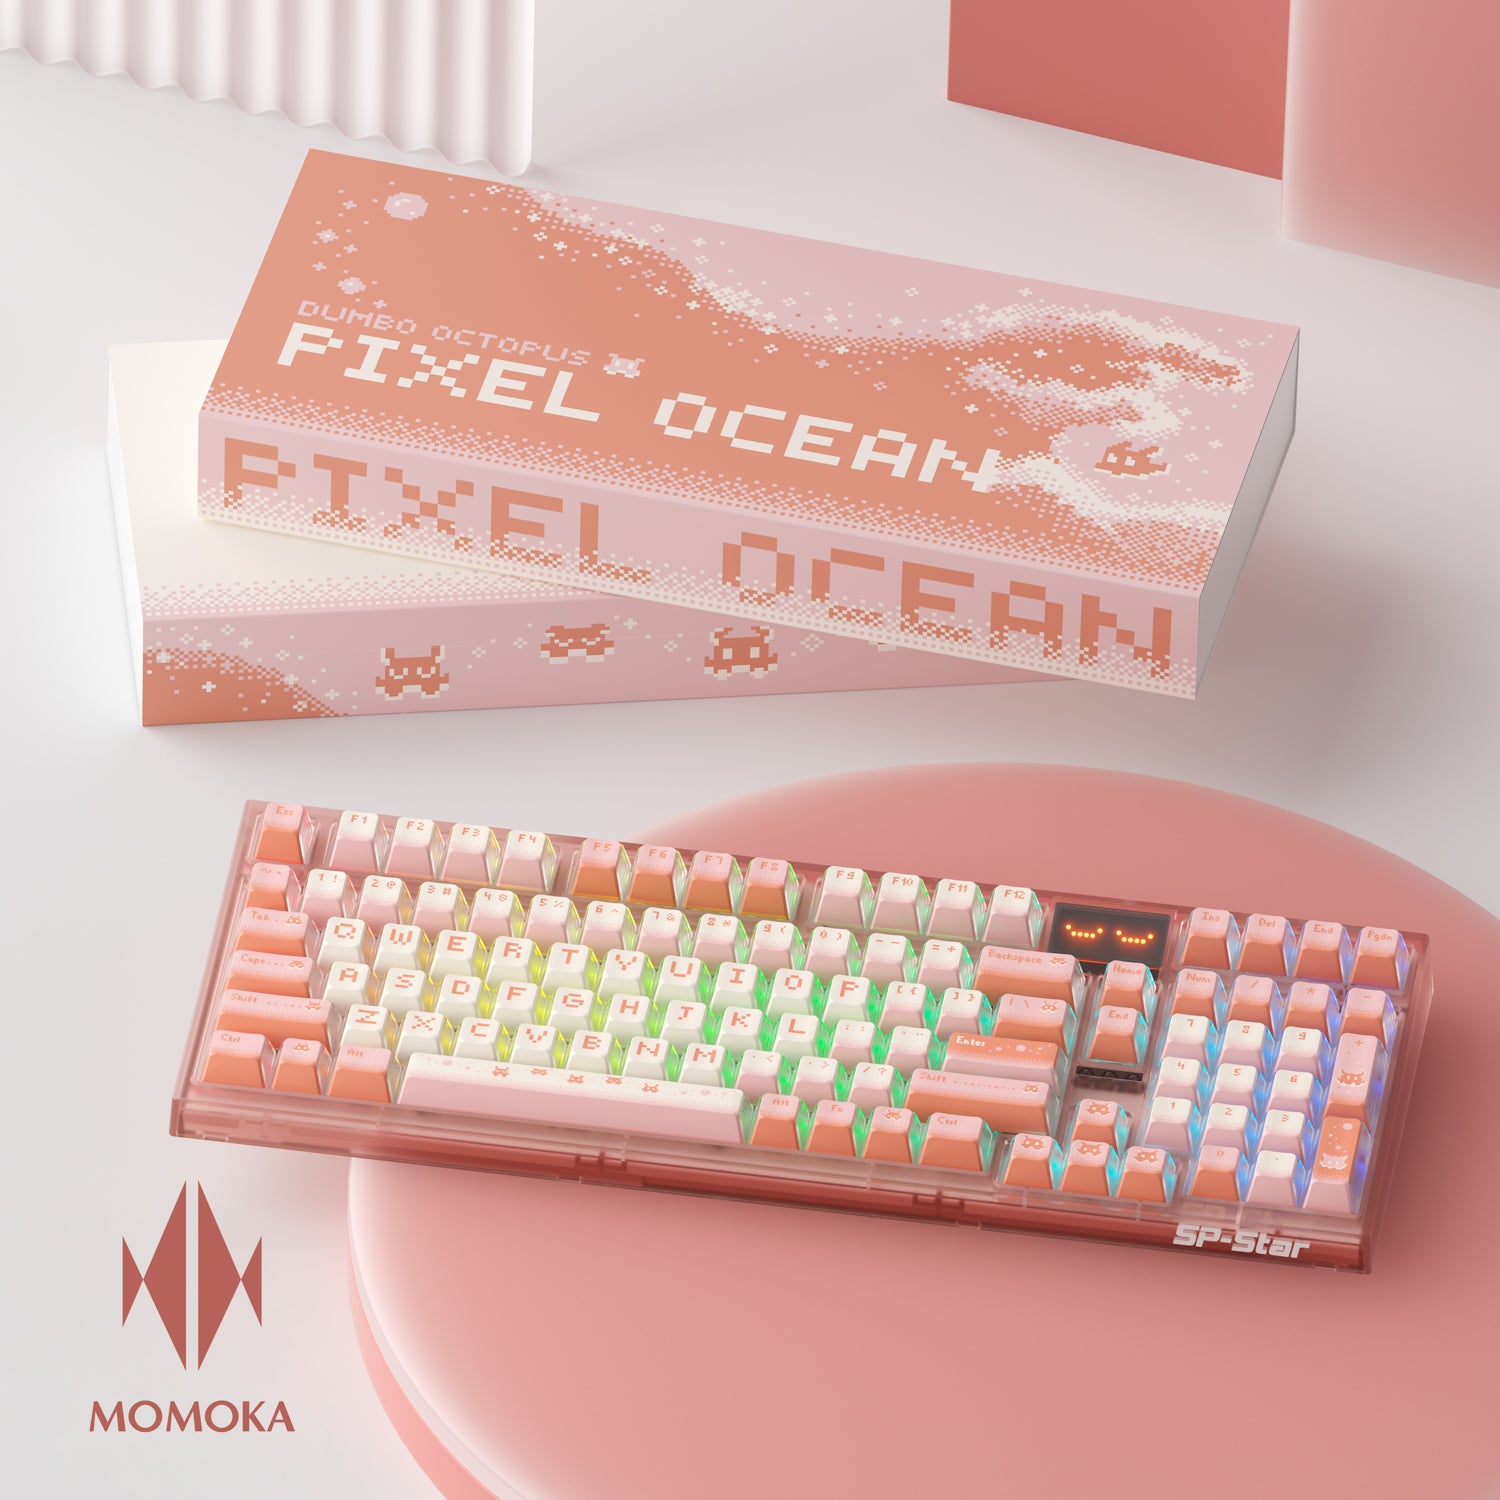 【絶賛発売中】MOMOKA Pixel Ocean（128キーキャップ）